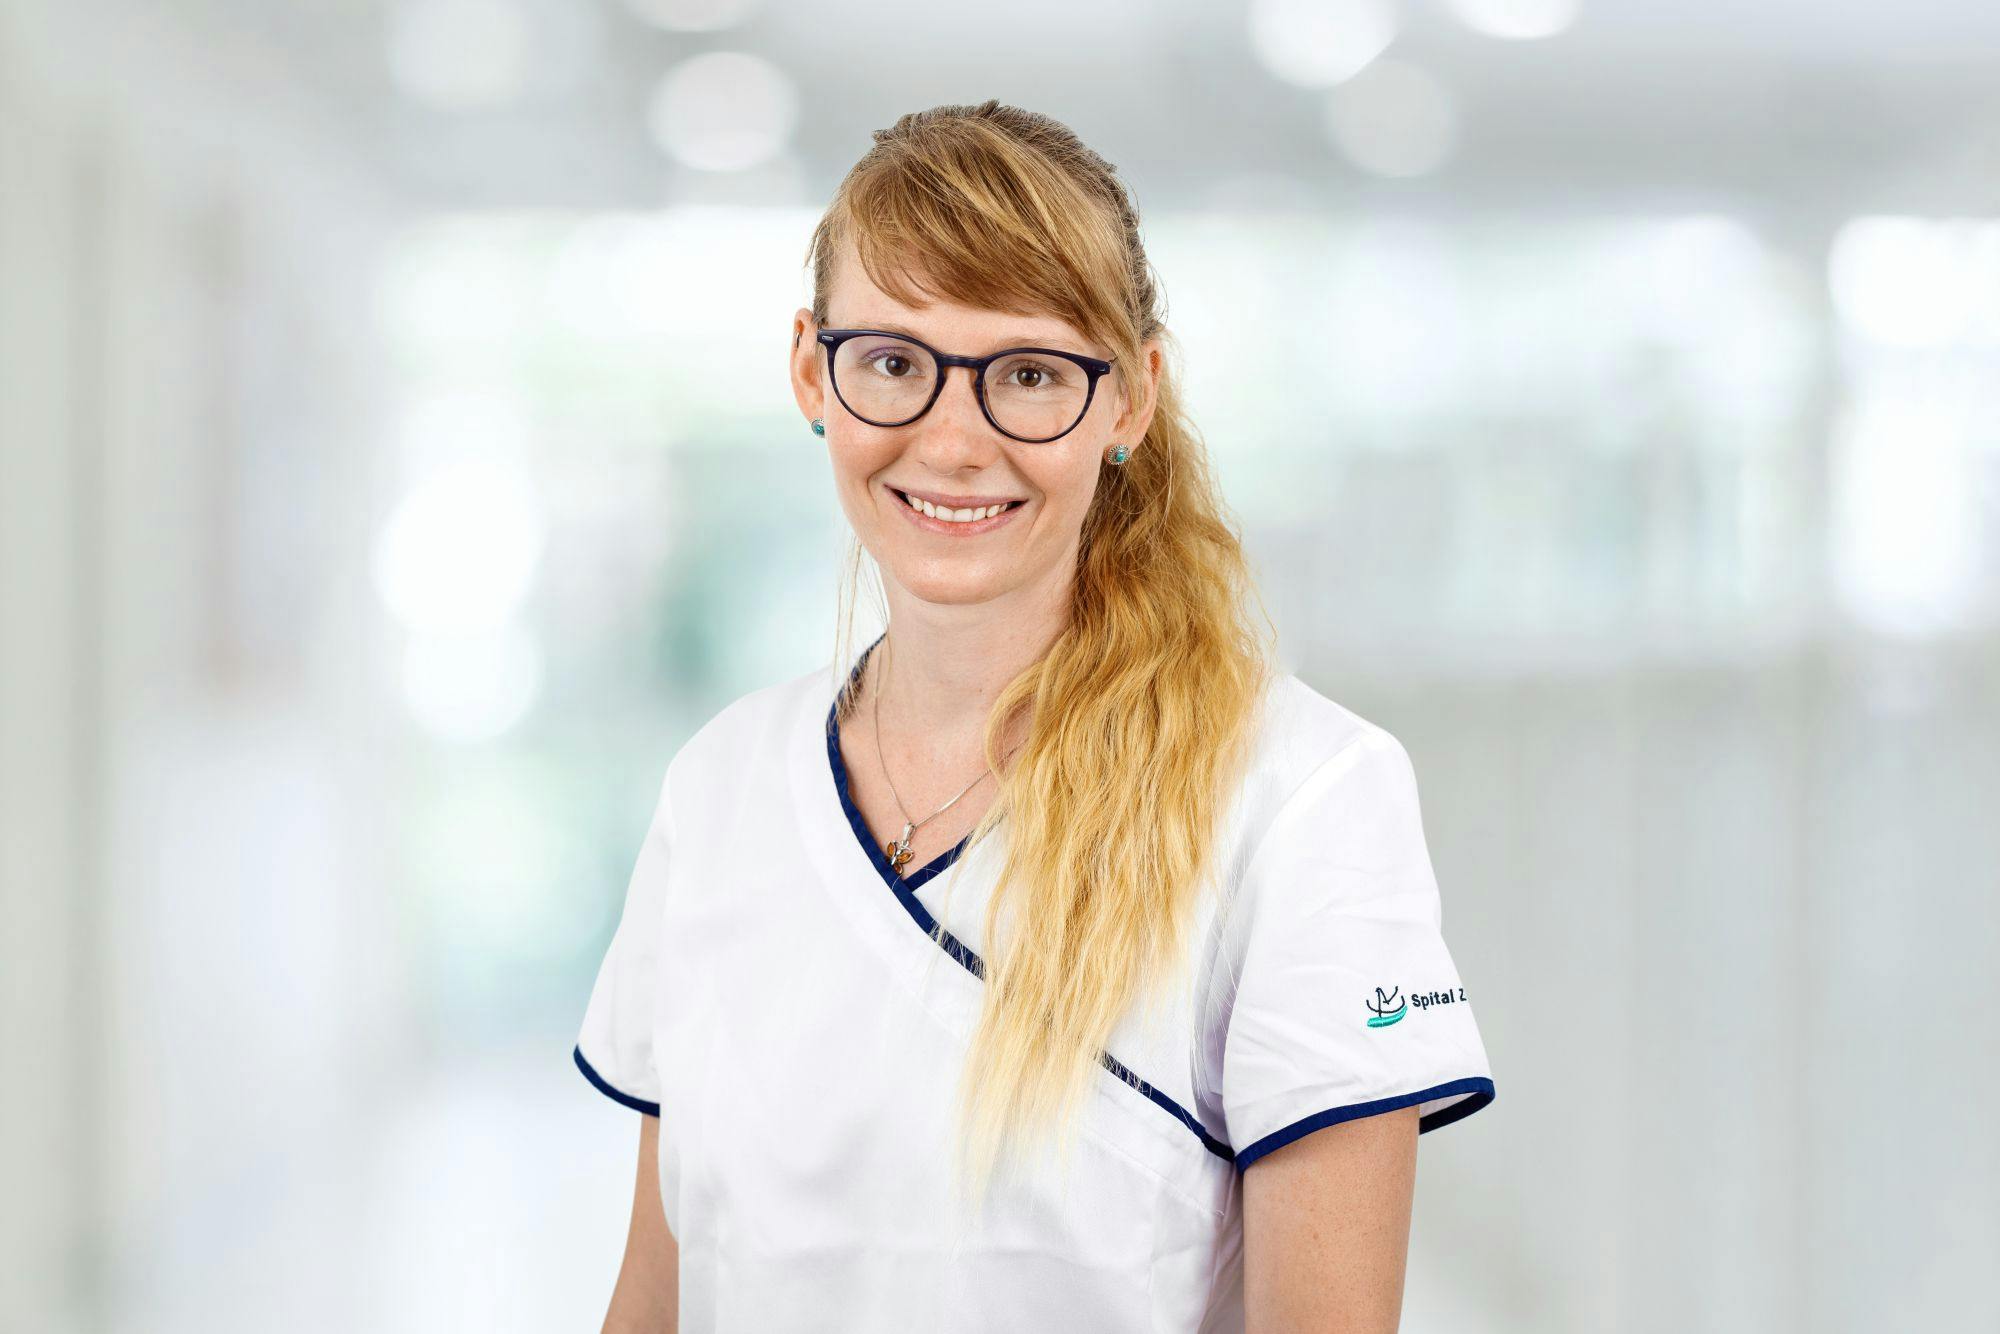 Lächelnde Frau in medizinischer Berufskleidung mit Brille und geflochtenem Haar.